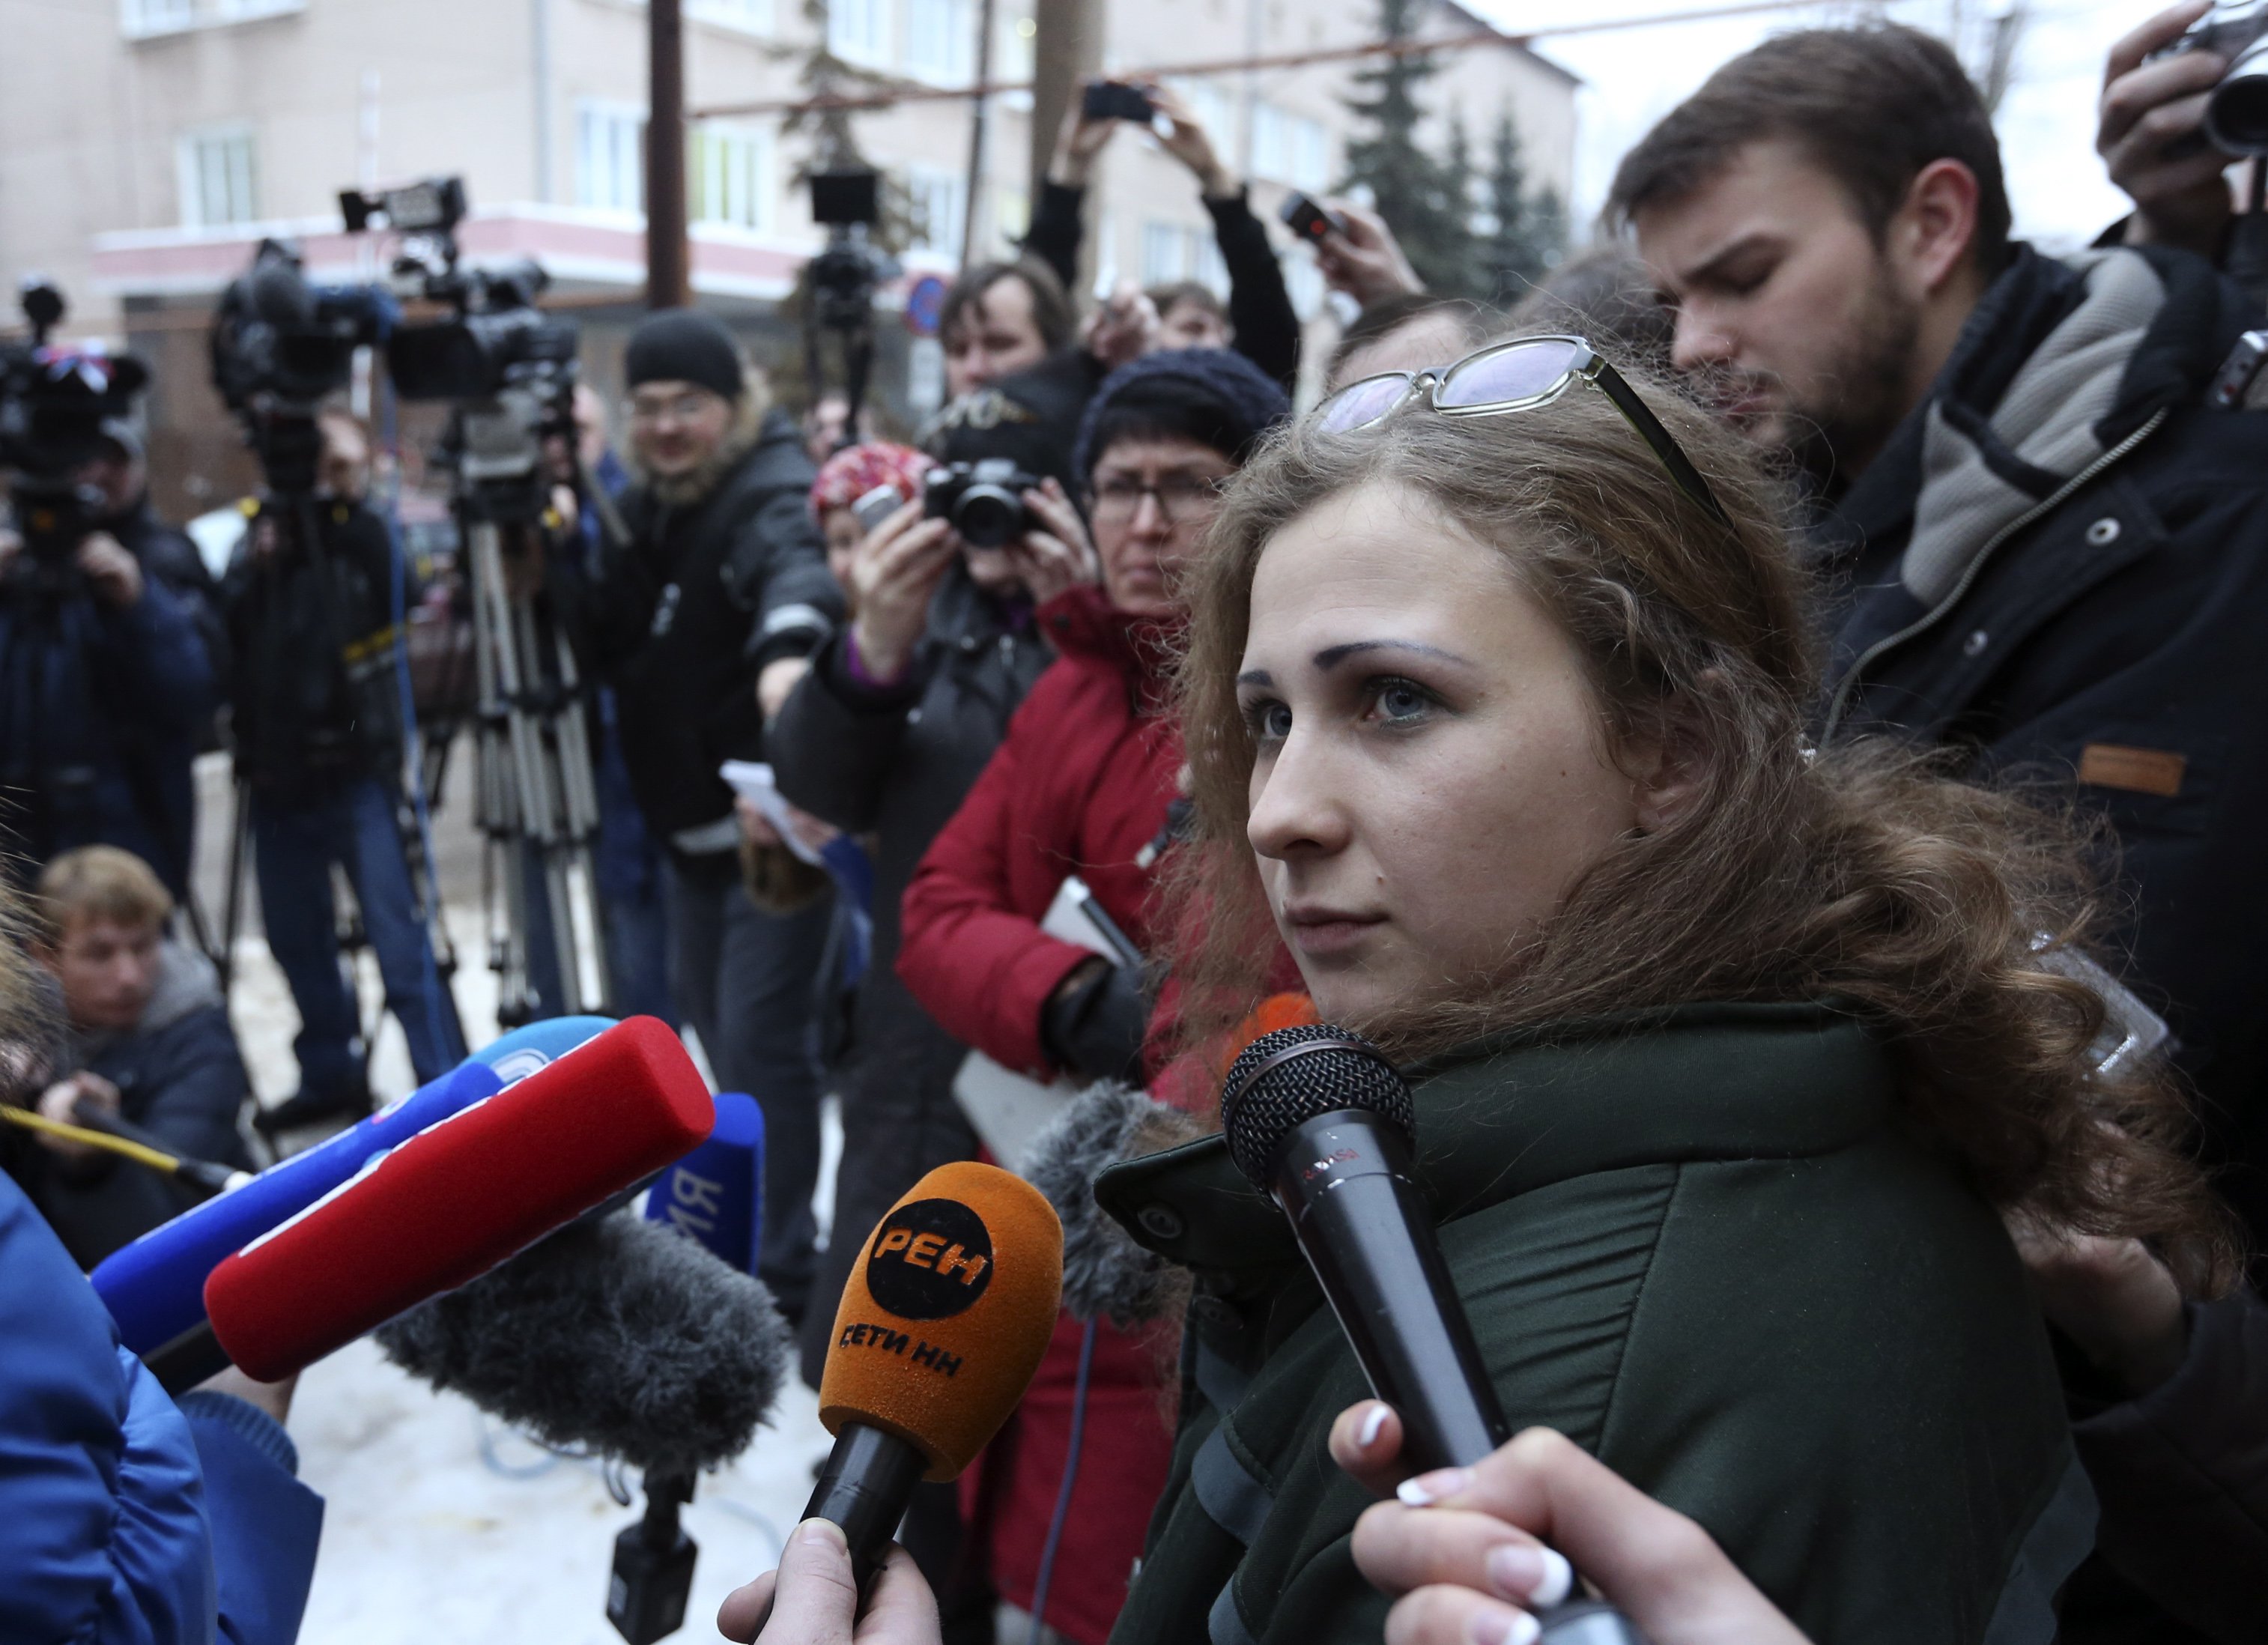 Las Pussy Riot María Aliójina y Nadezhda Tolokónnikova salen en libertad